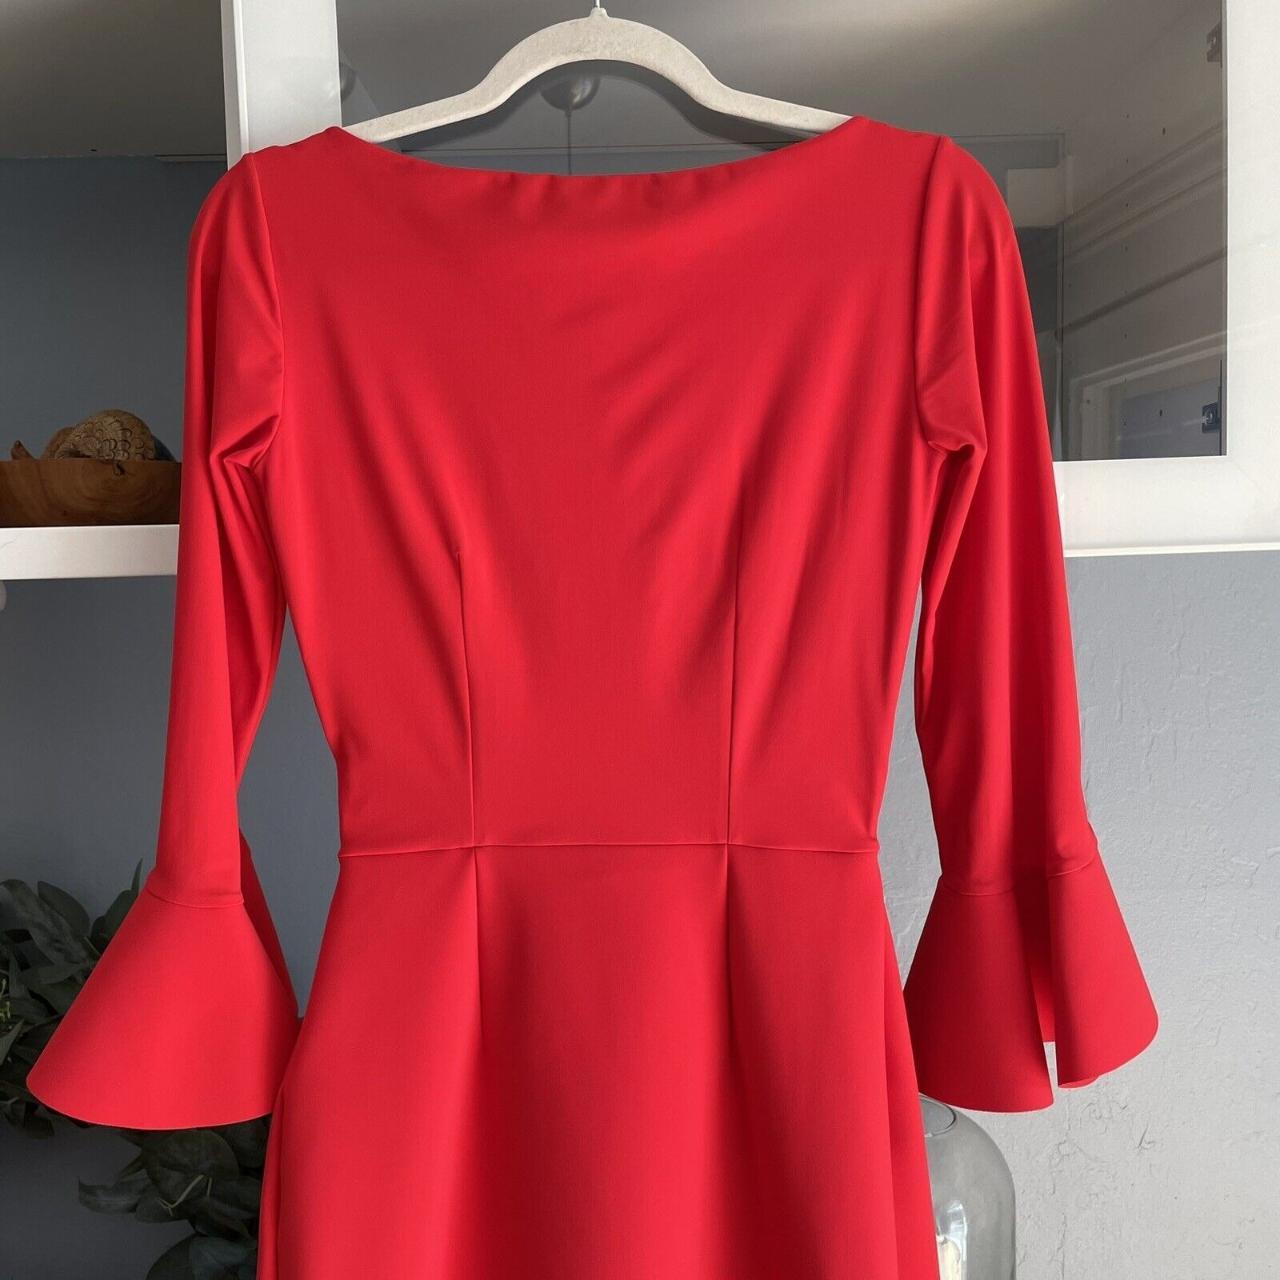 Chiara Boni La Petite Robe Women's Red Dress (4)